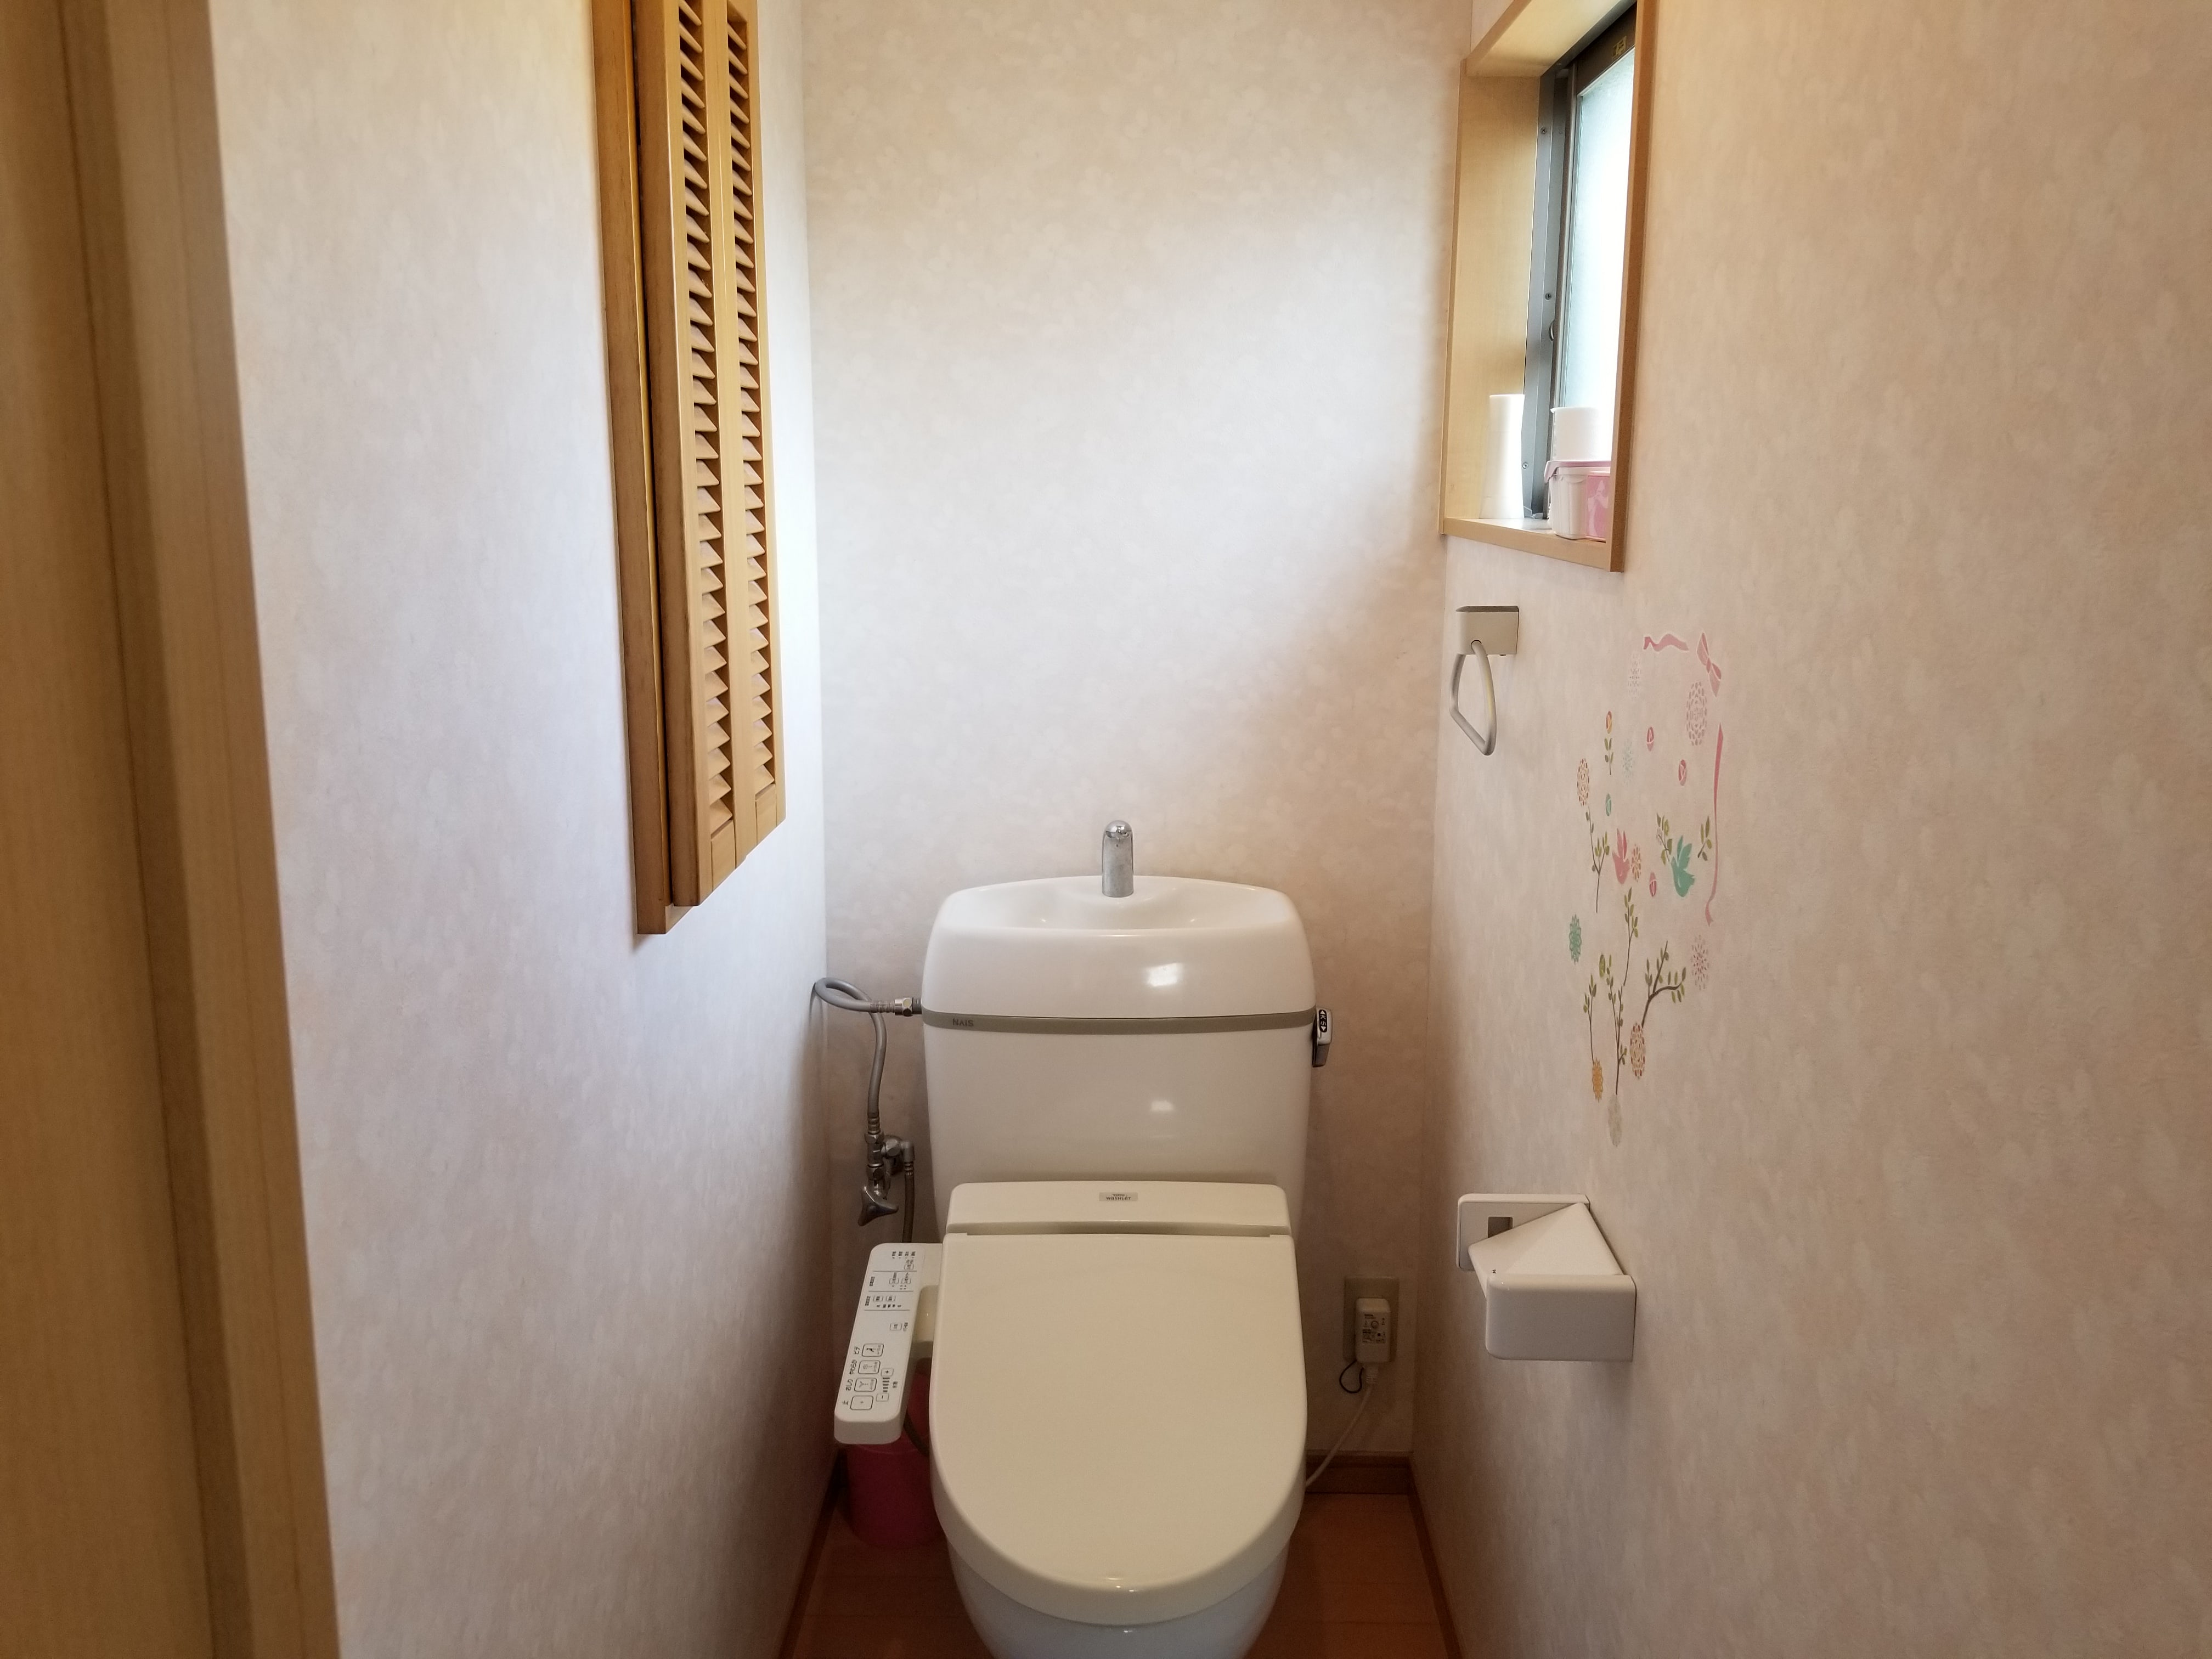 長崎市でトイレの壁紙 クロス 張替えの施工事例 長崎壁紙 クロス 張替え職人 壁紙クロス張替はお任せ下さい